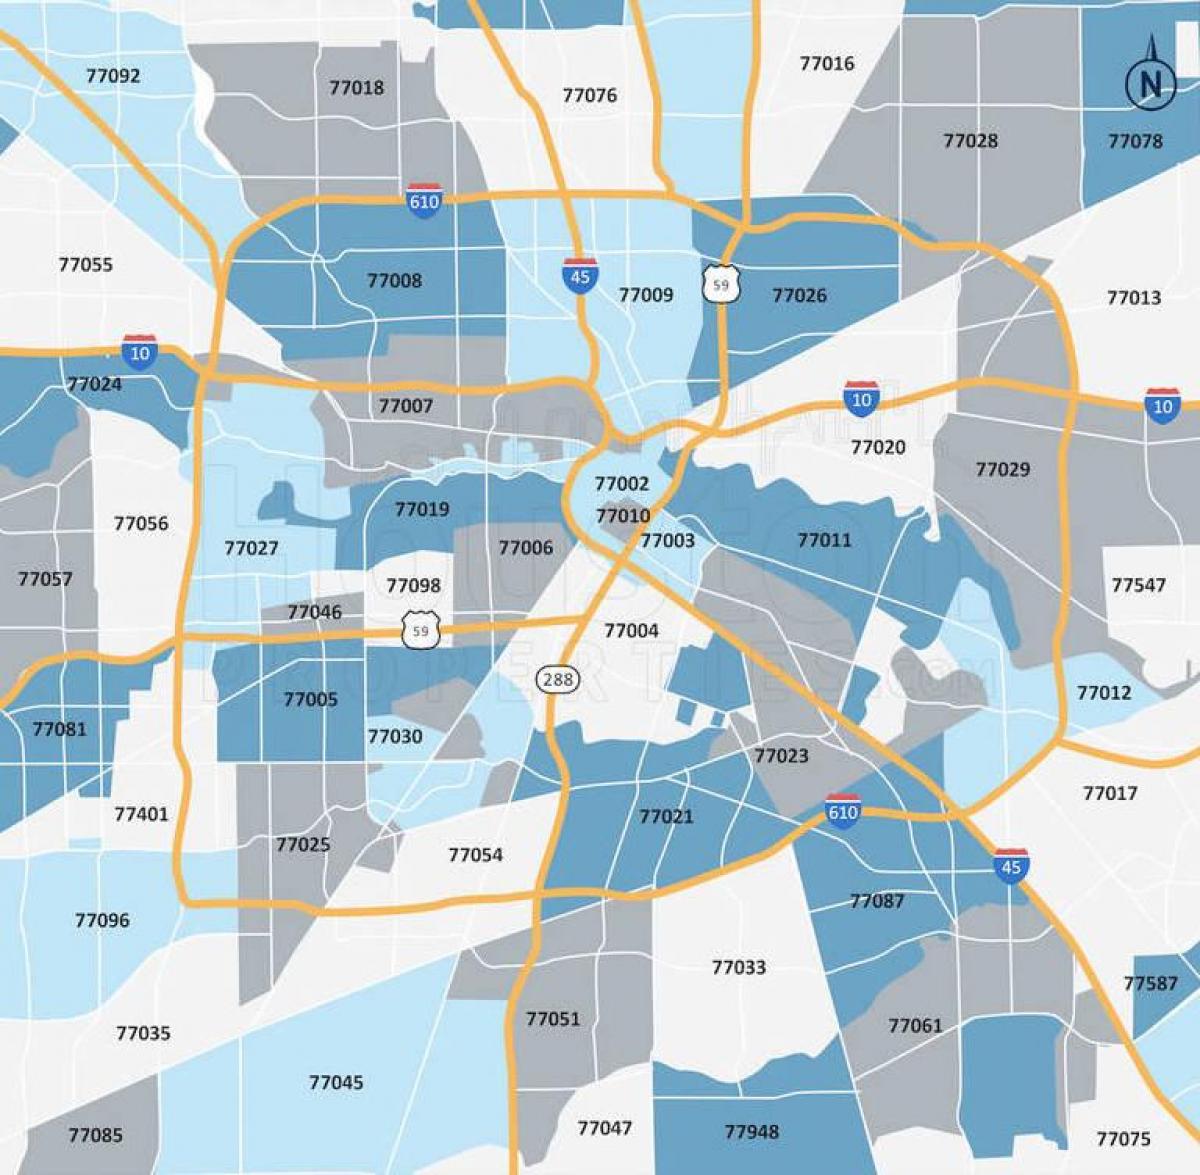 Karte der Postleitzahlen von Houston